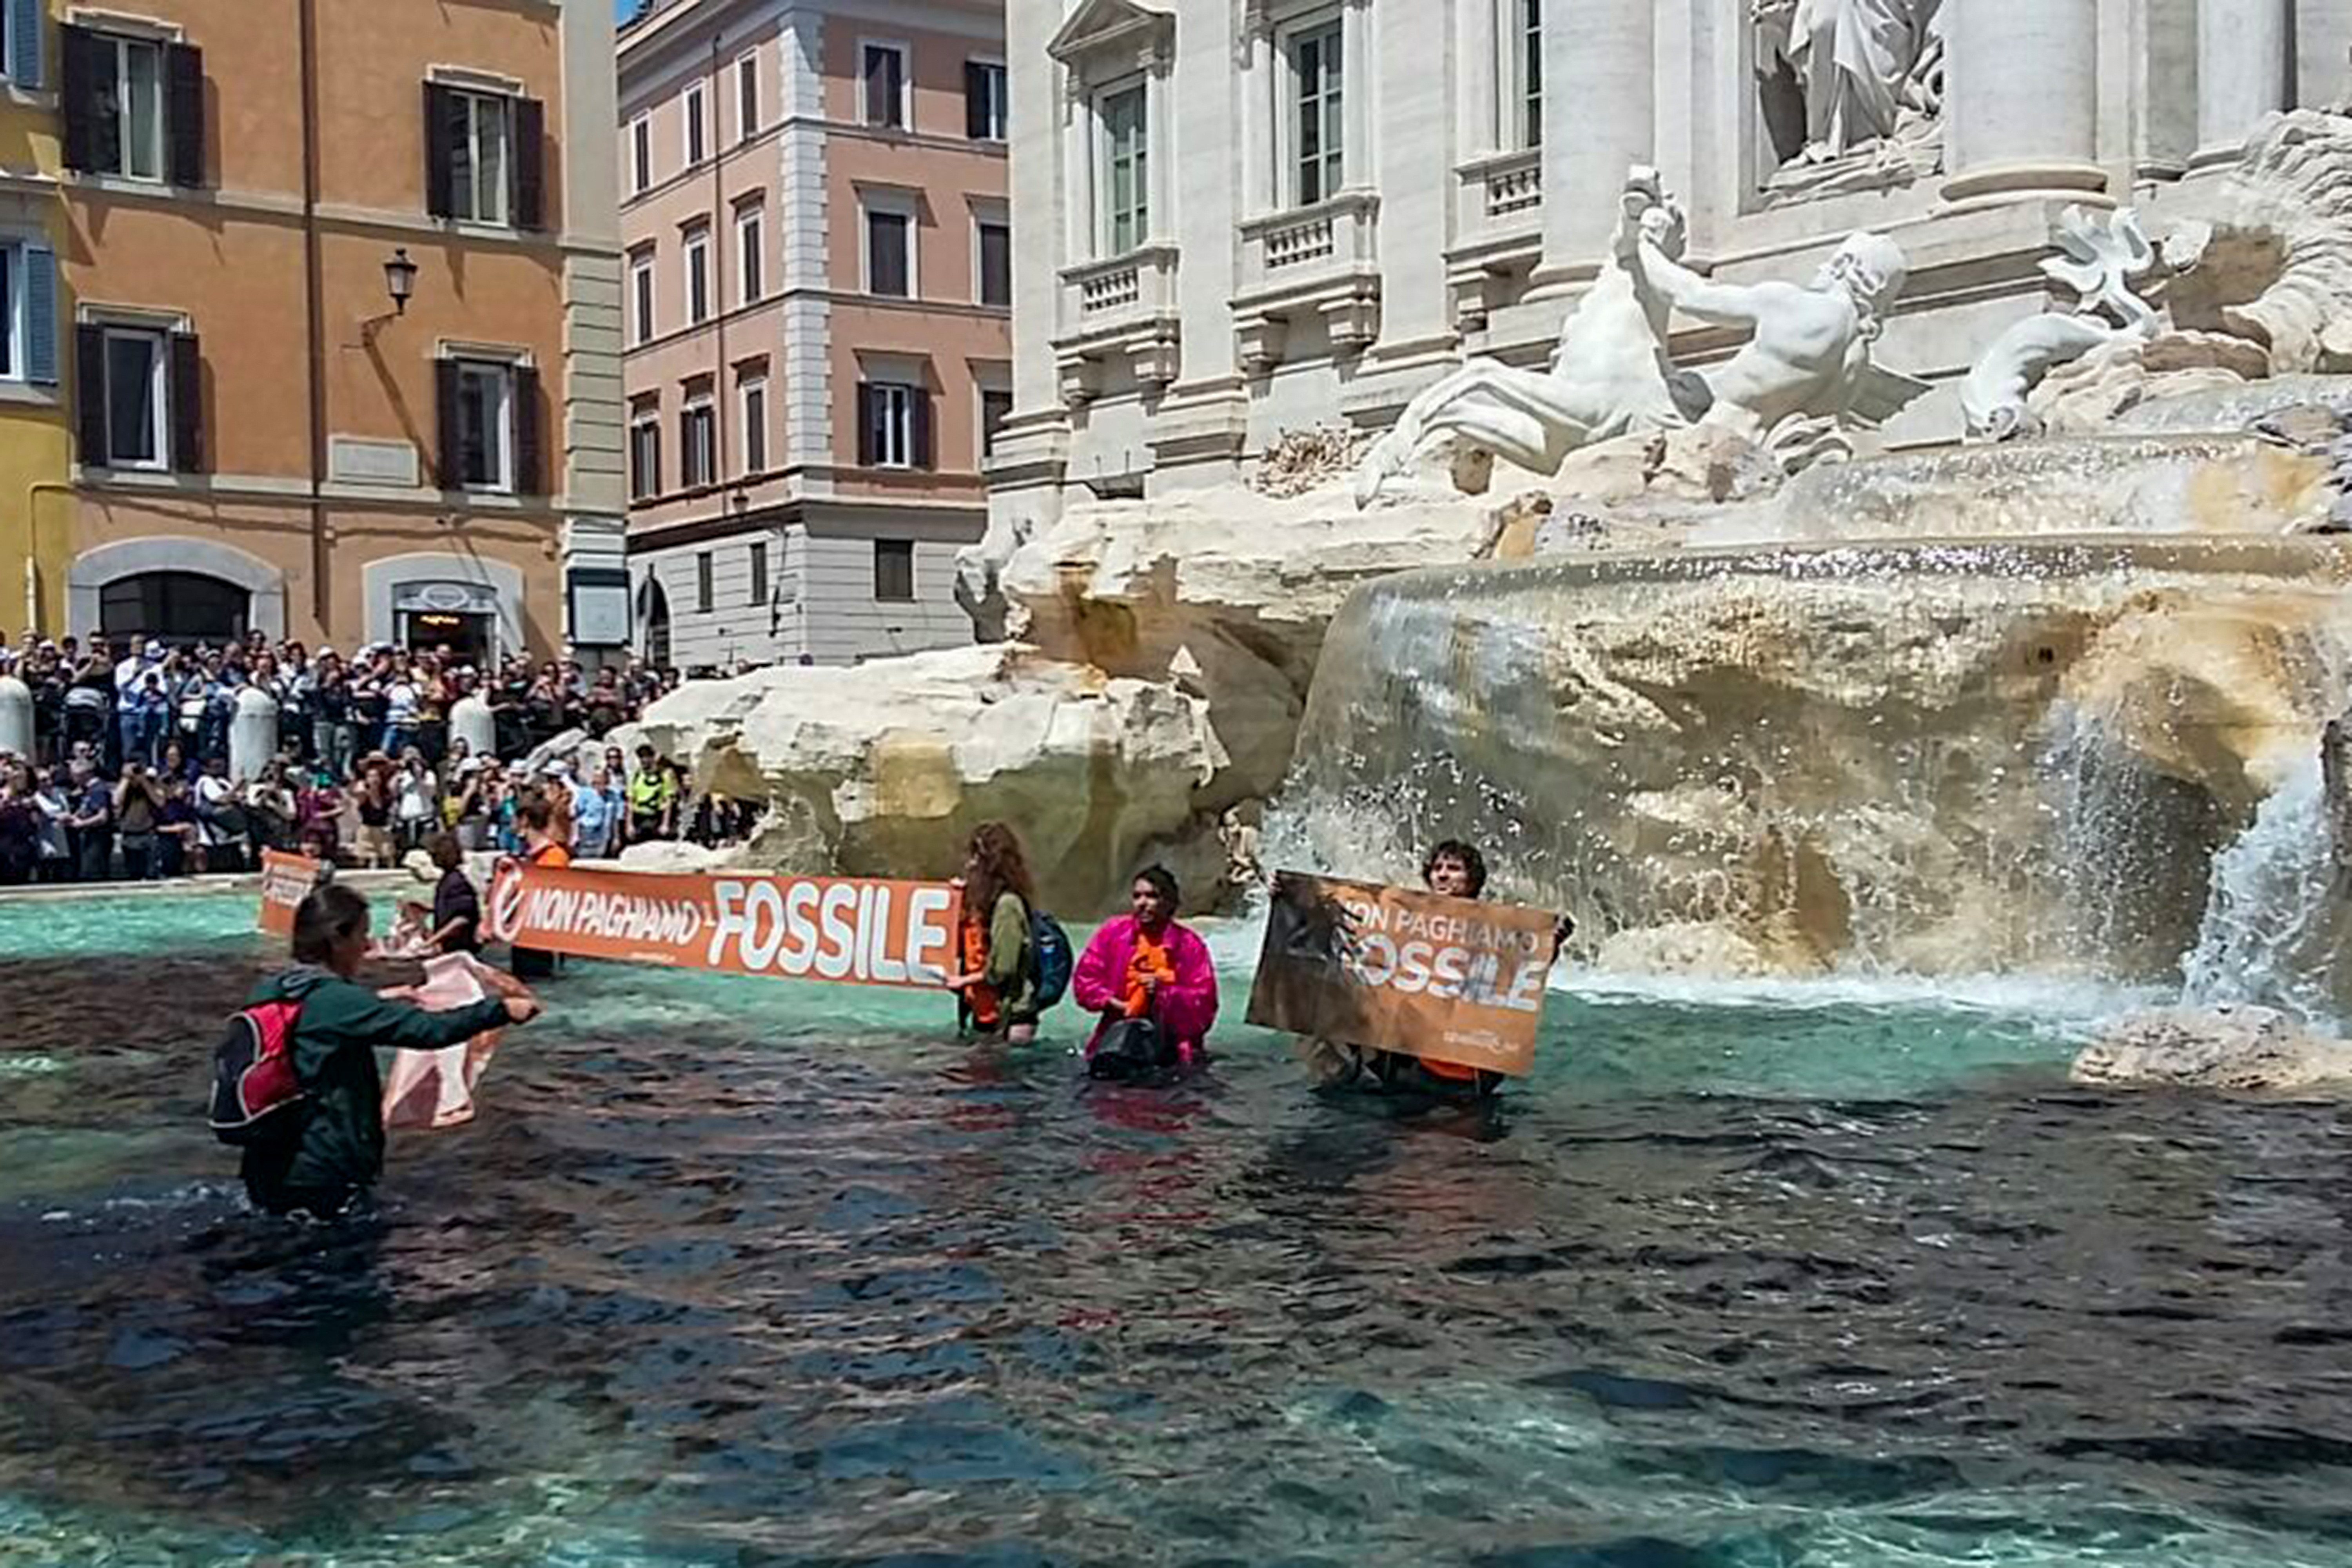 Activistas climáticos tiñeron de negro la Fontana de Trevi de Roma: “Nuestro país está muriendo”